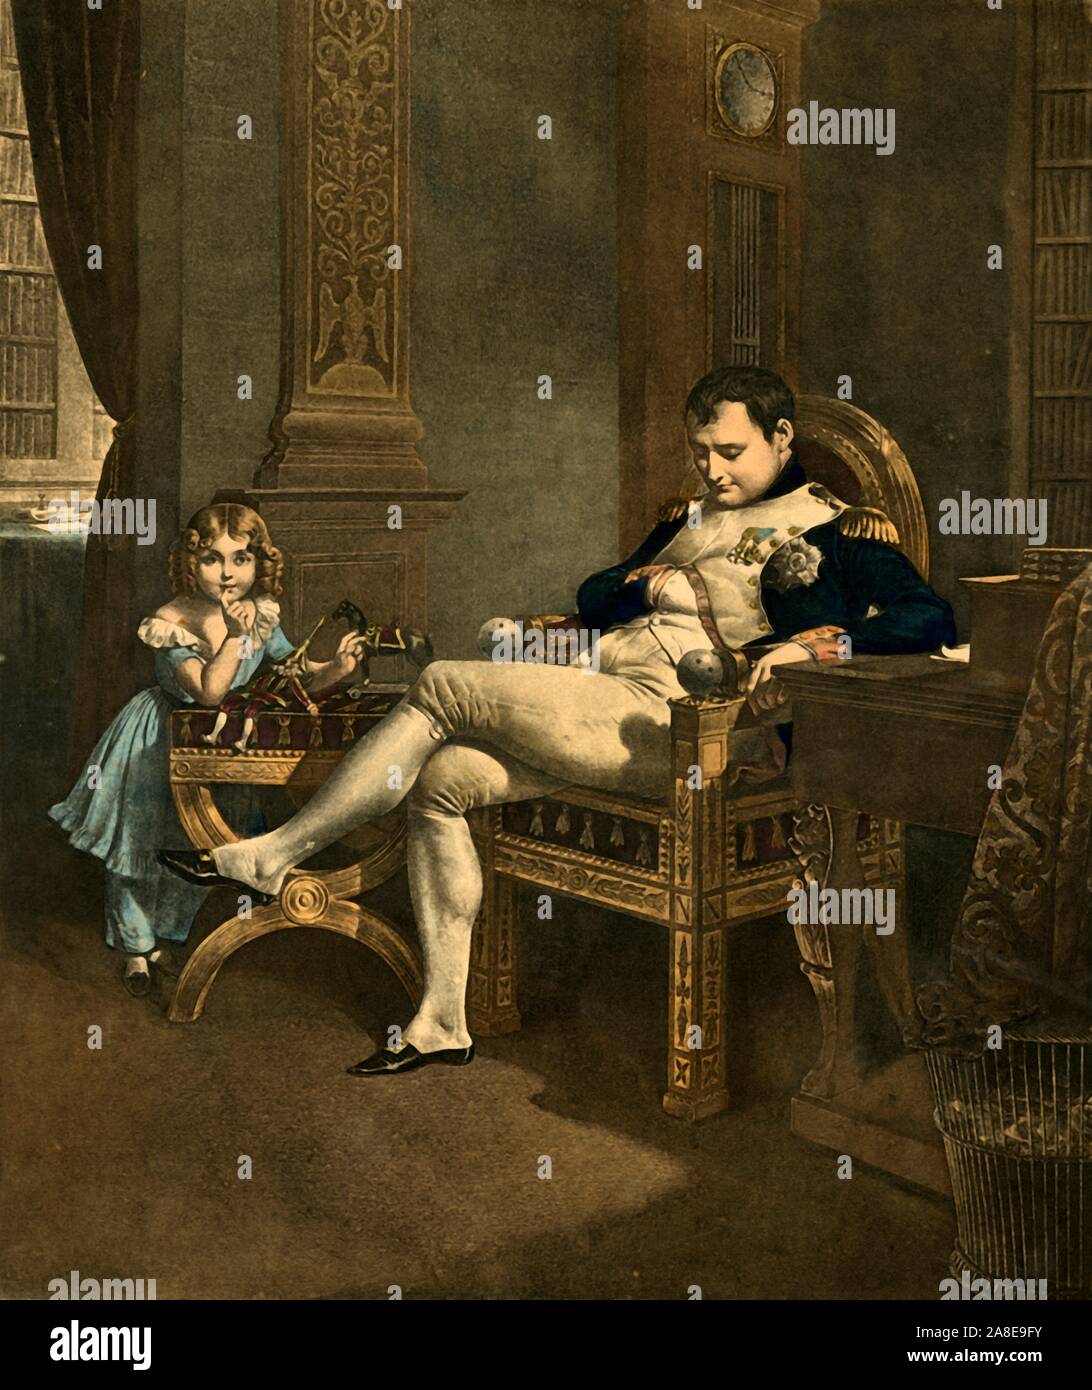 "Chut! Papa Dort!", secolo XIX, (1921). 'SSH, Papa dorme!". L'imperatore Napoleone dozes nel suo trono come un bambino tiene un dito per lei (suo?) labbra. Giocattoli - un punzone bambola e un cavallo su ruote - sono sullo sgabello di fronte al bambino. Nonostante il vestito e boccoli, questo può essere di Napoleone Bonaparte, figlio, denominata anche Napoleone (1811-1832). Era comune per i ragazzi di indossare delle ragazze vestiti durante questo periodo. (Napoleone aveva una figliastra, Hortense Beauharnais, che sarebbero state circa 12 quando la sua madre ha incontrato Napoleone nel 1795). Da "Napoleone", da Raymond Guyot, [H. Farinosa, Paris, 1921] Foto Stock